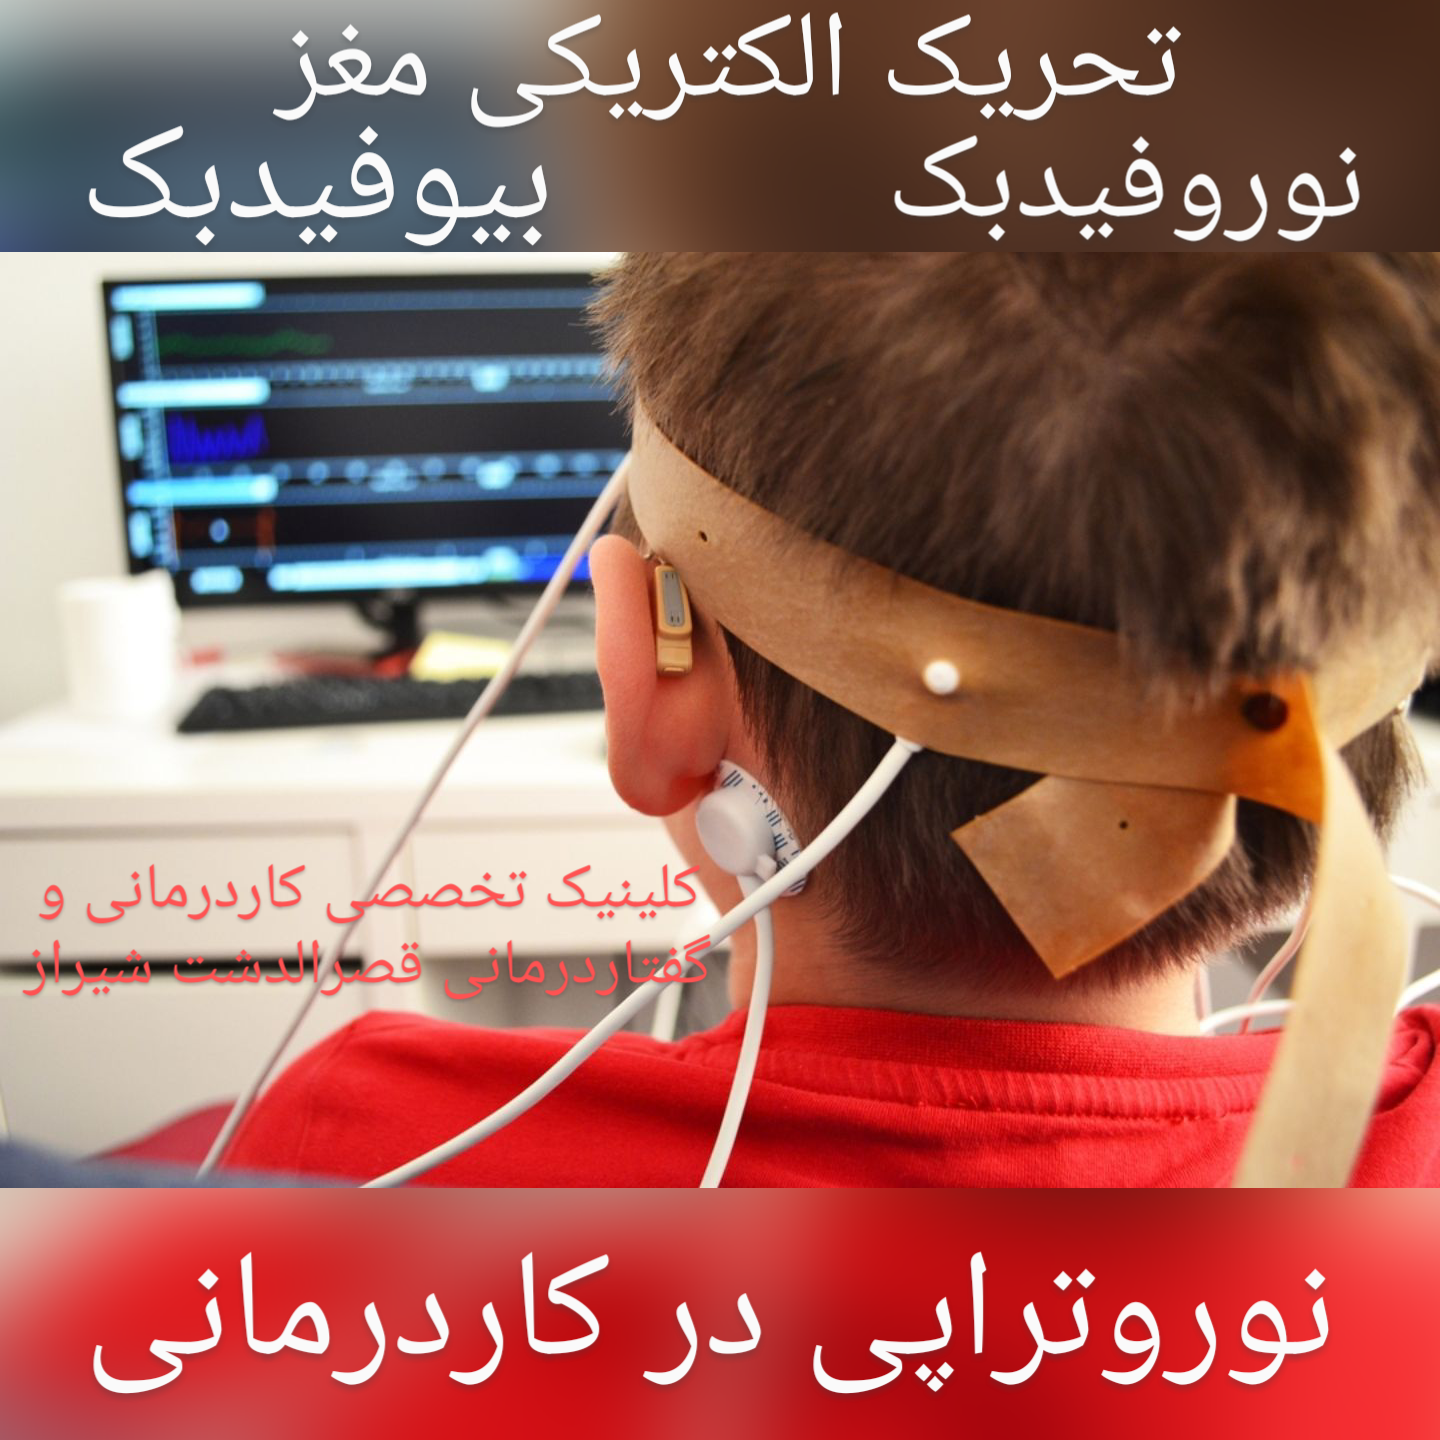 بهترین مرکز نوروتراپی نوروفیدبک بیوفیدبک تحریک الکتریکی مغز در شیراز زیر نظر نظام پزشکی